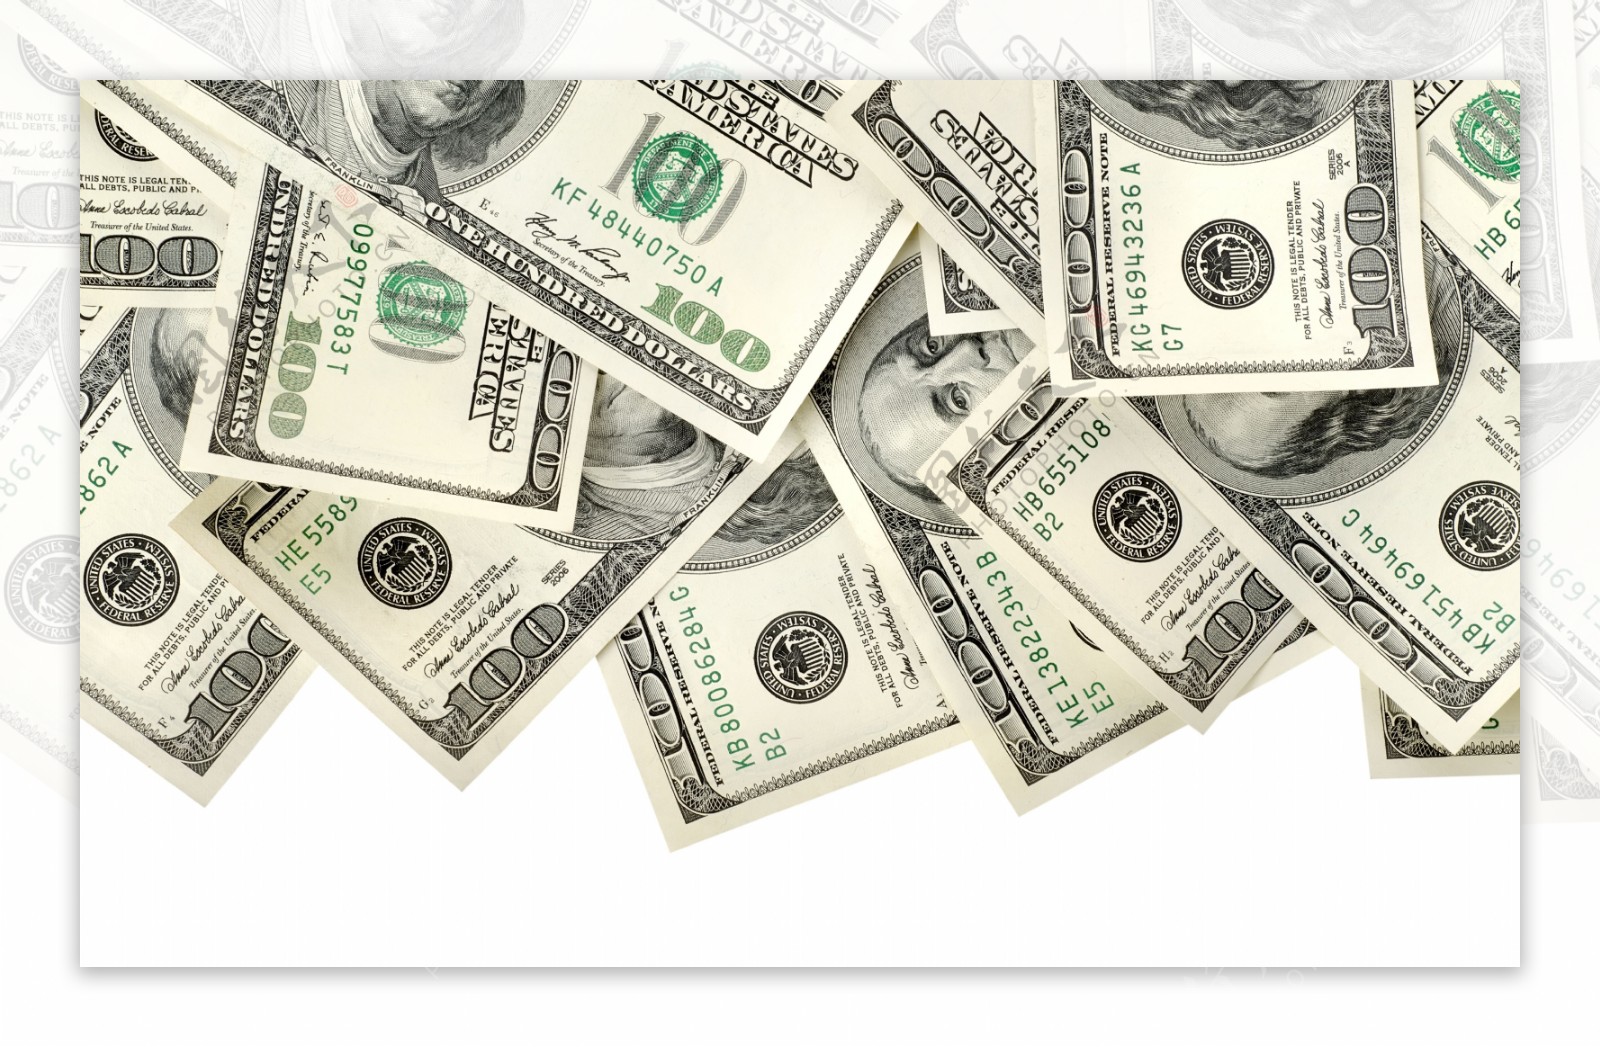 许许多多的美元钞票堆积在一起上面的富兰克林头像十分清晰商业金融素材设计